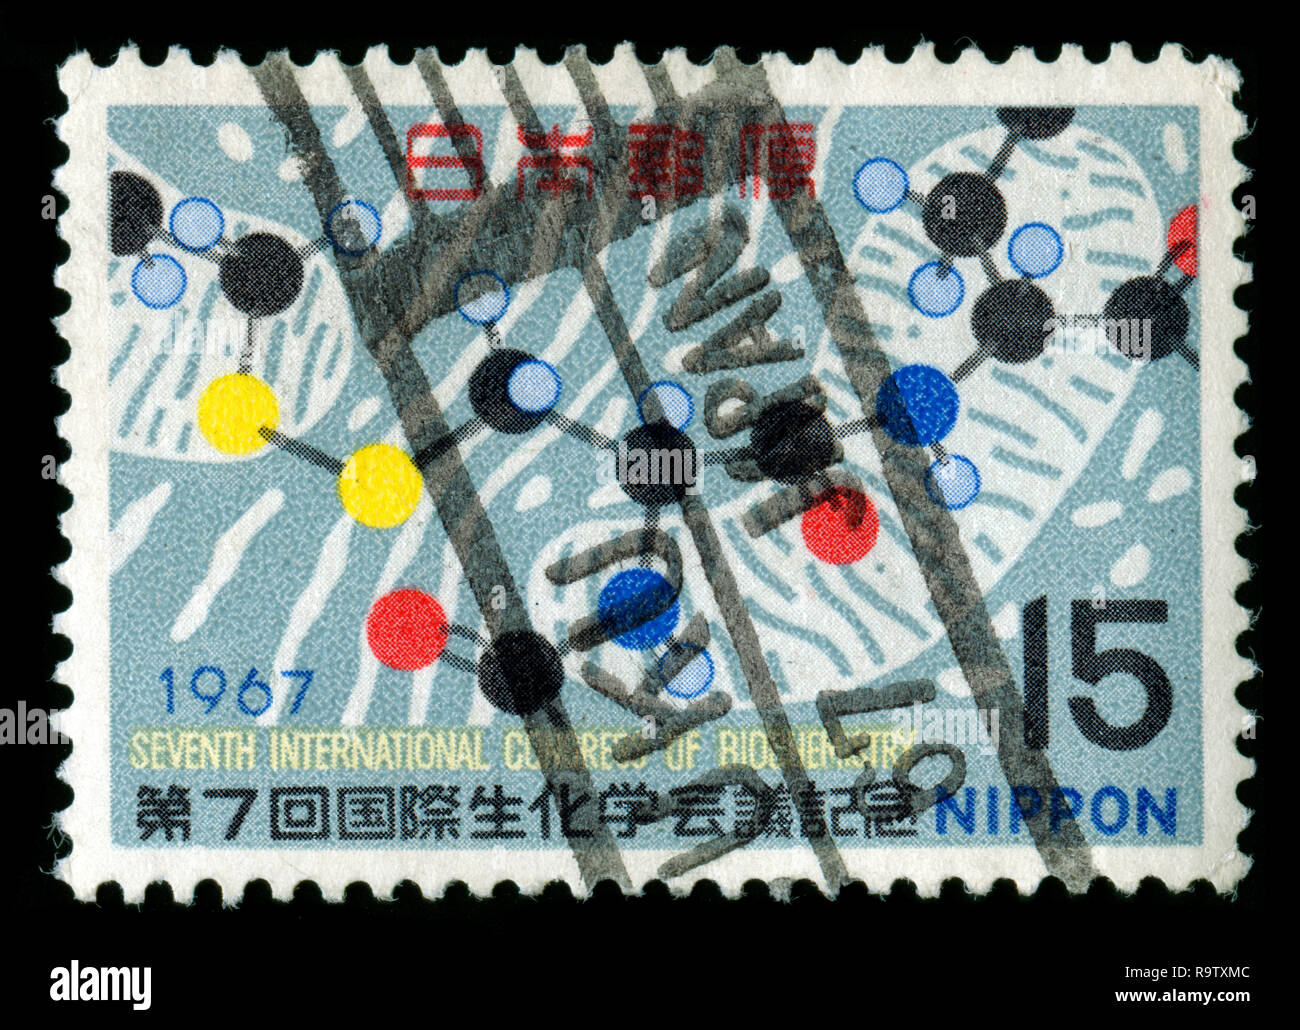 Timbre-poste du Japon dans les campagnes, événements et anniversaires série émise en 1967 Banque D'Images